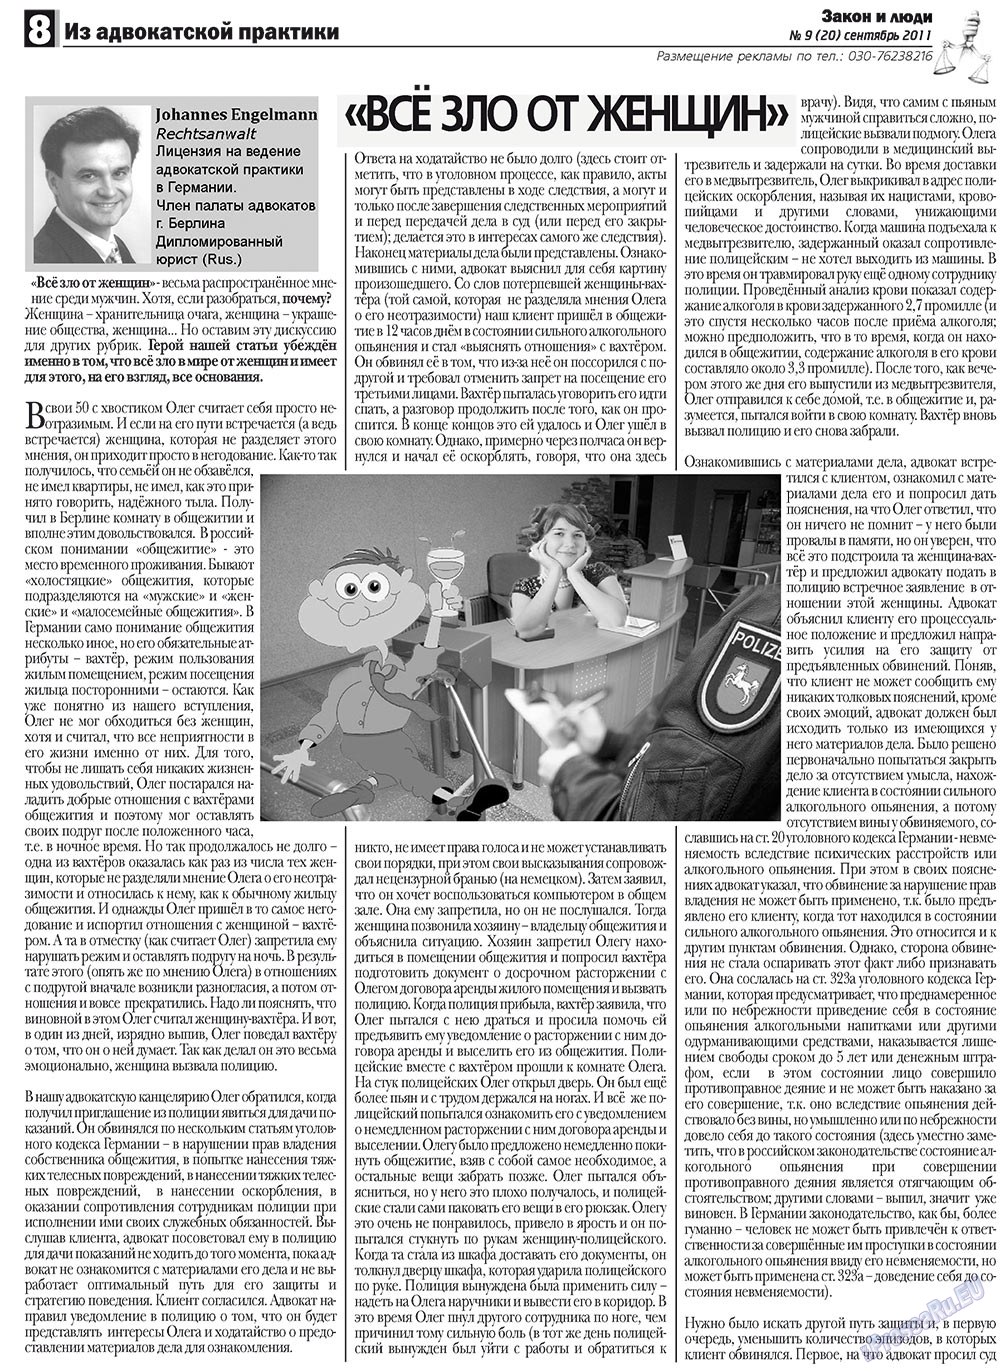 Закон и люди, газета. 2011 №9 стр.8